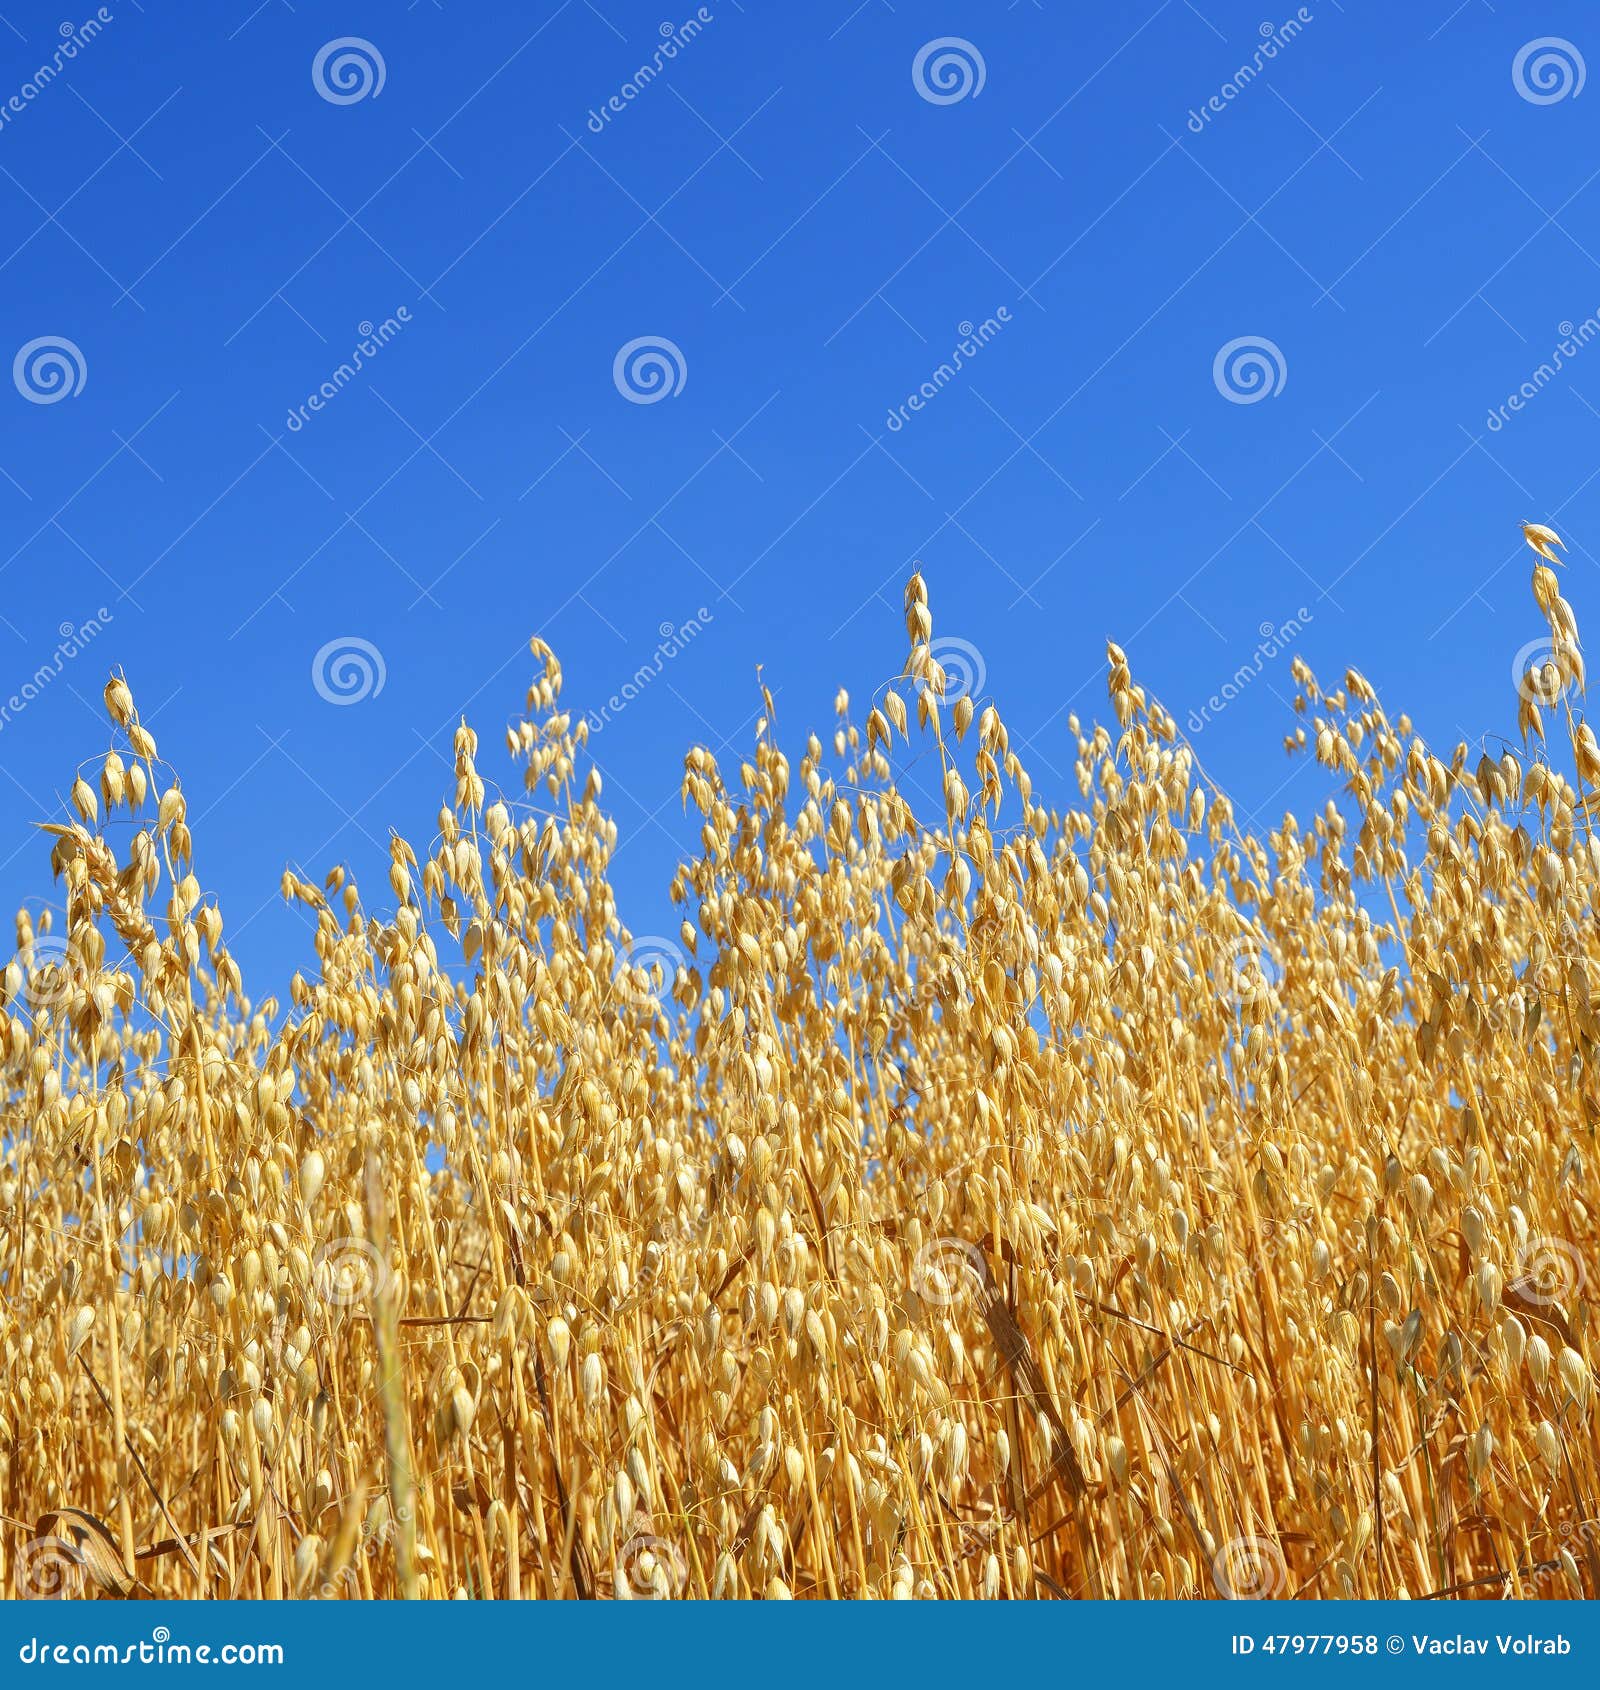 oats field